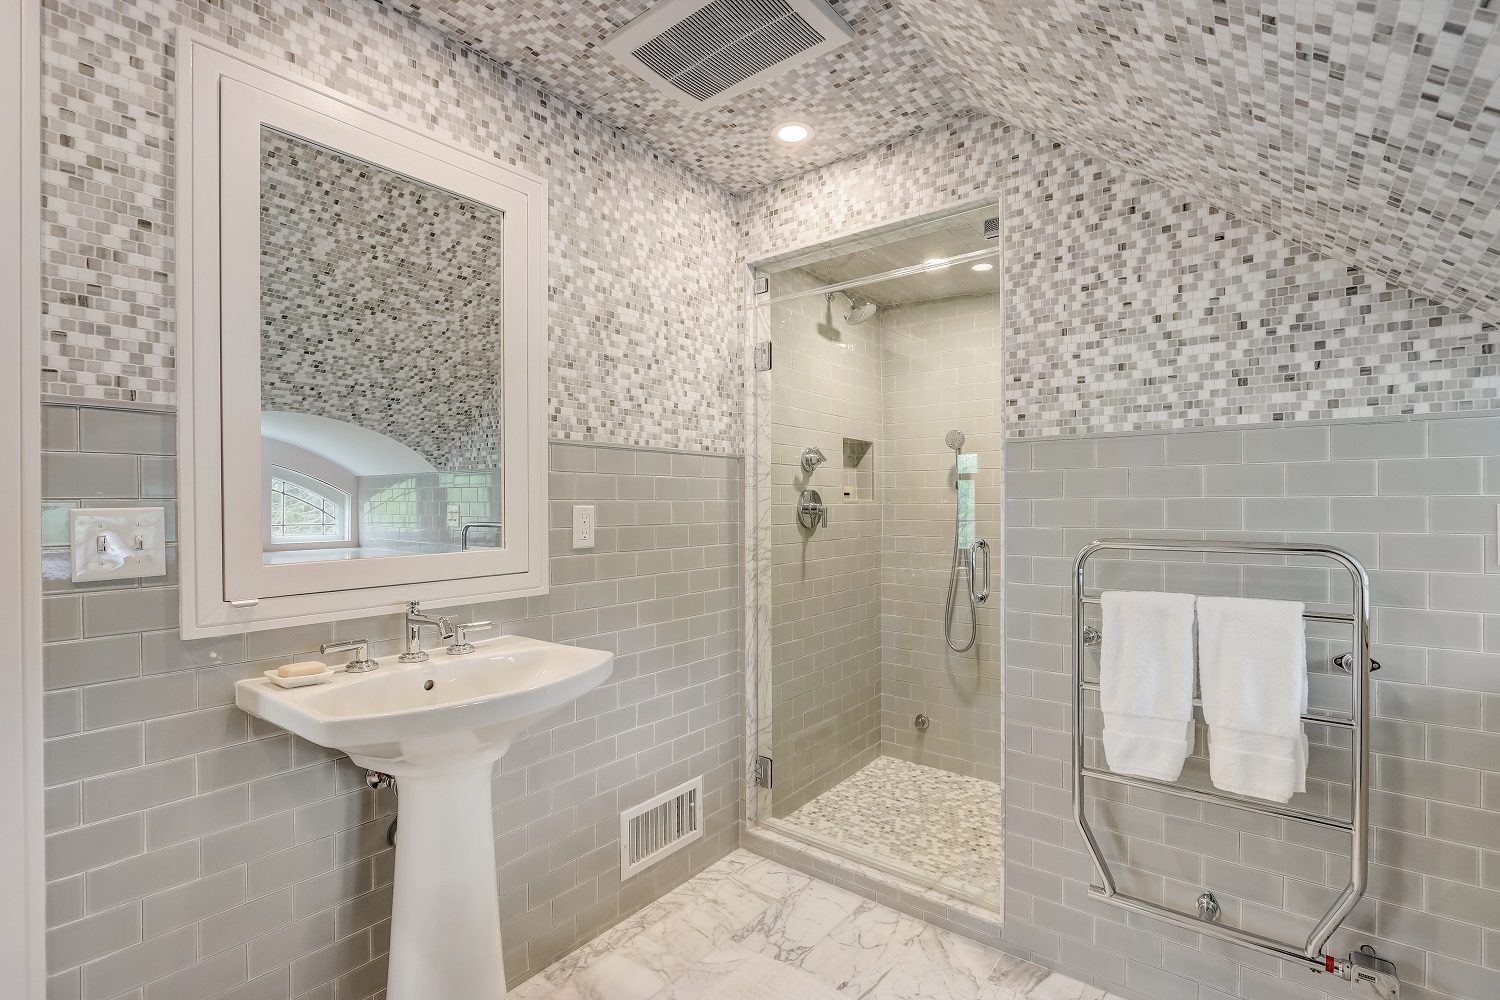 Steam Shower Installation in Milwaukee Bathroom Remodel